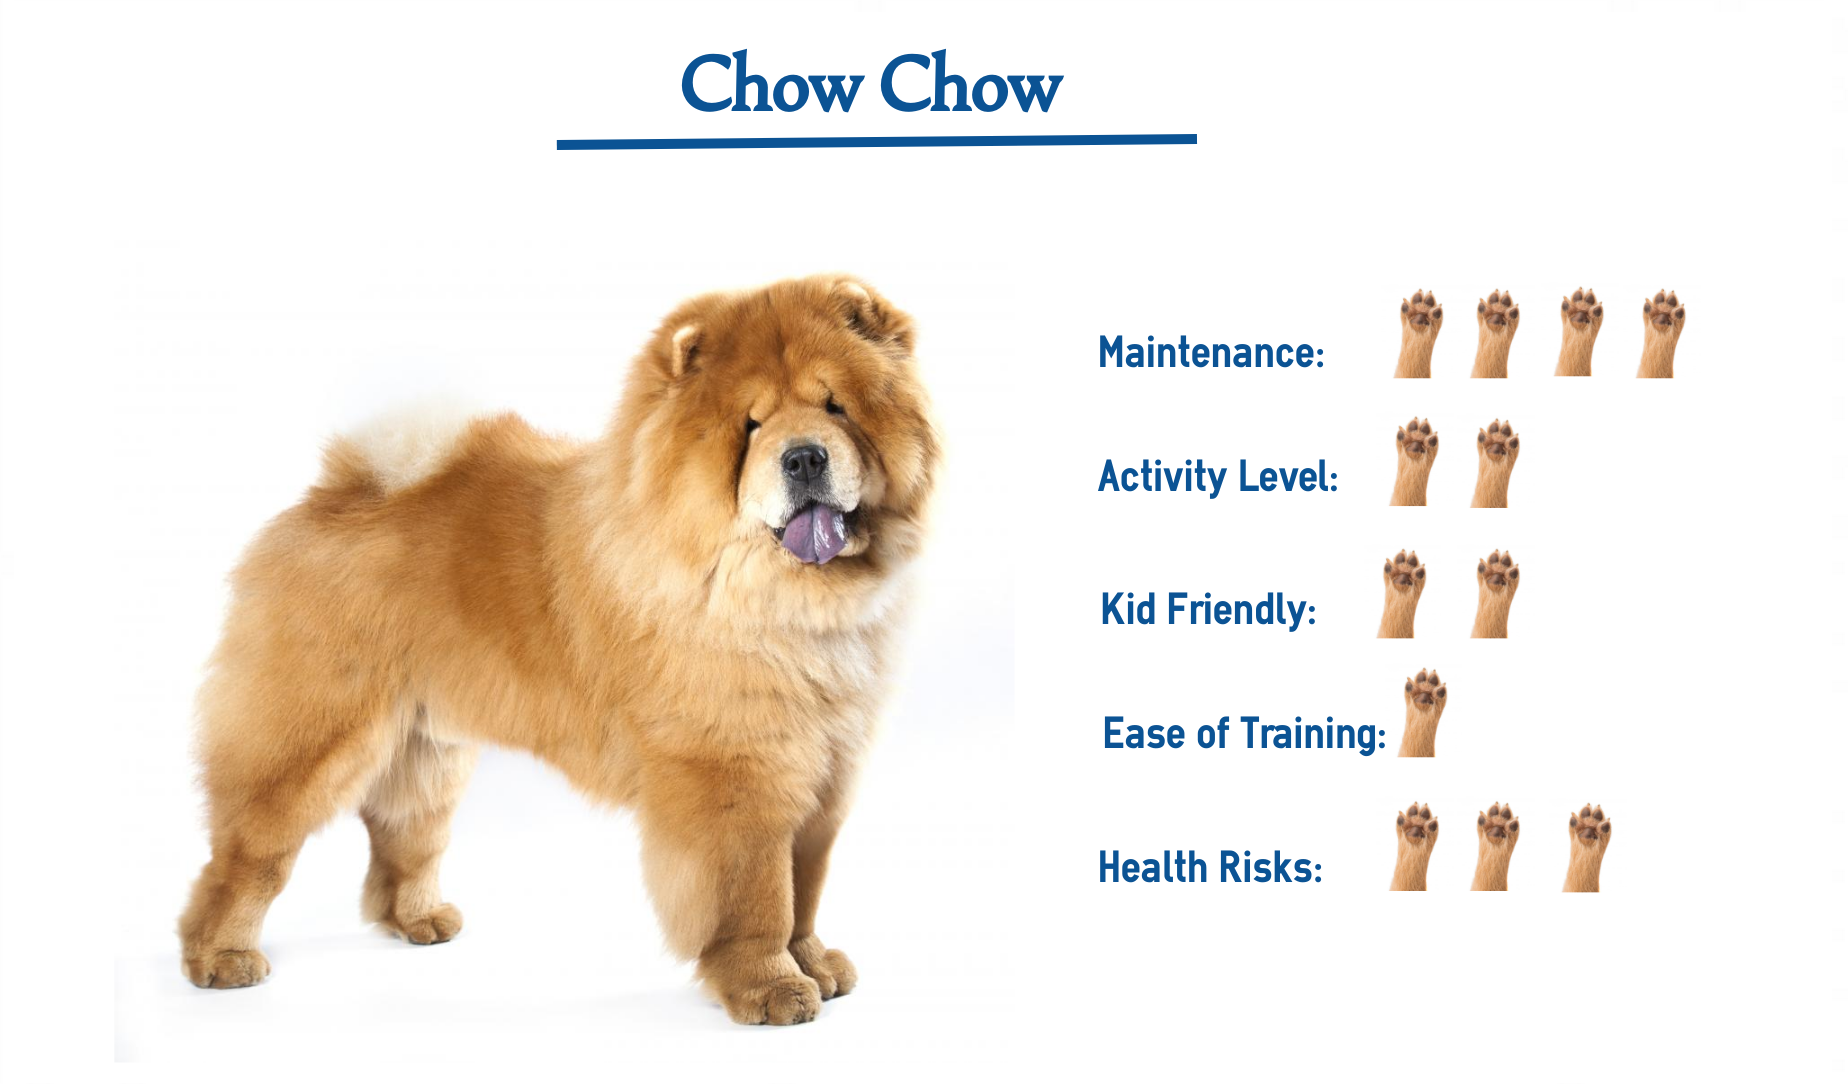 a chow